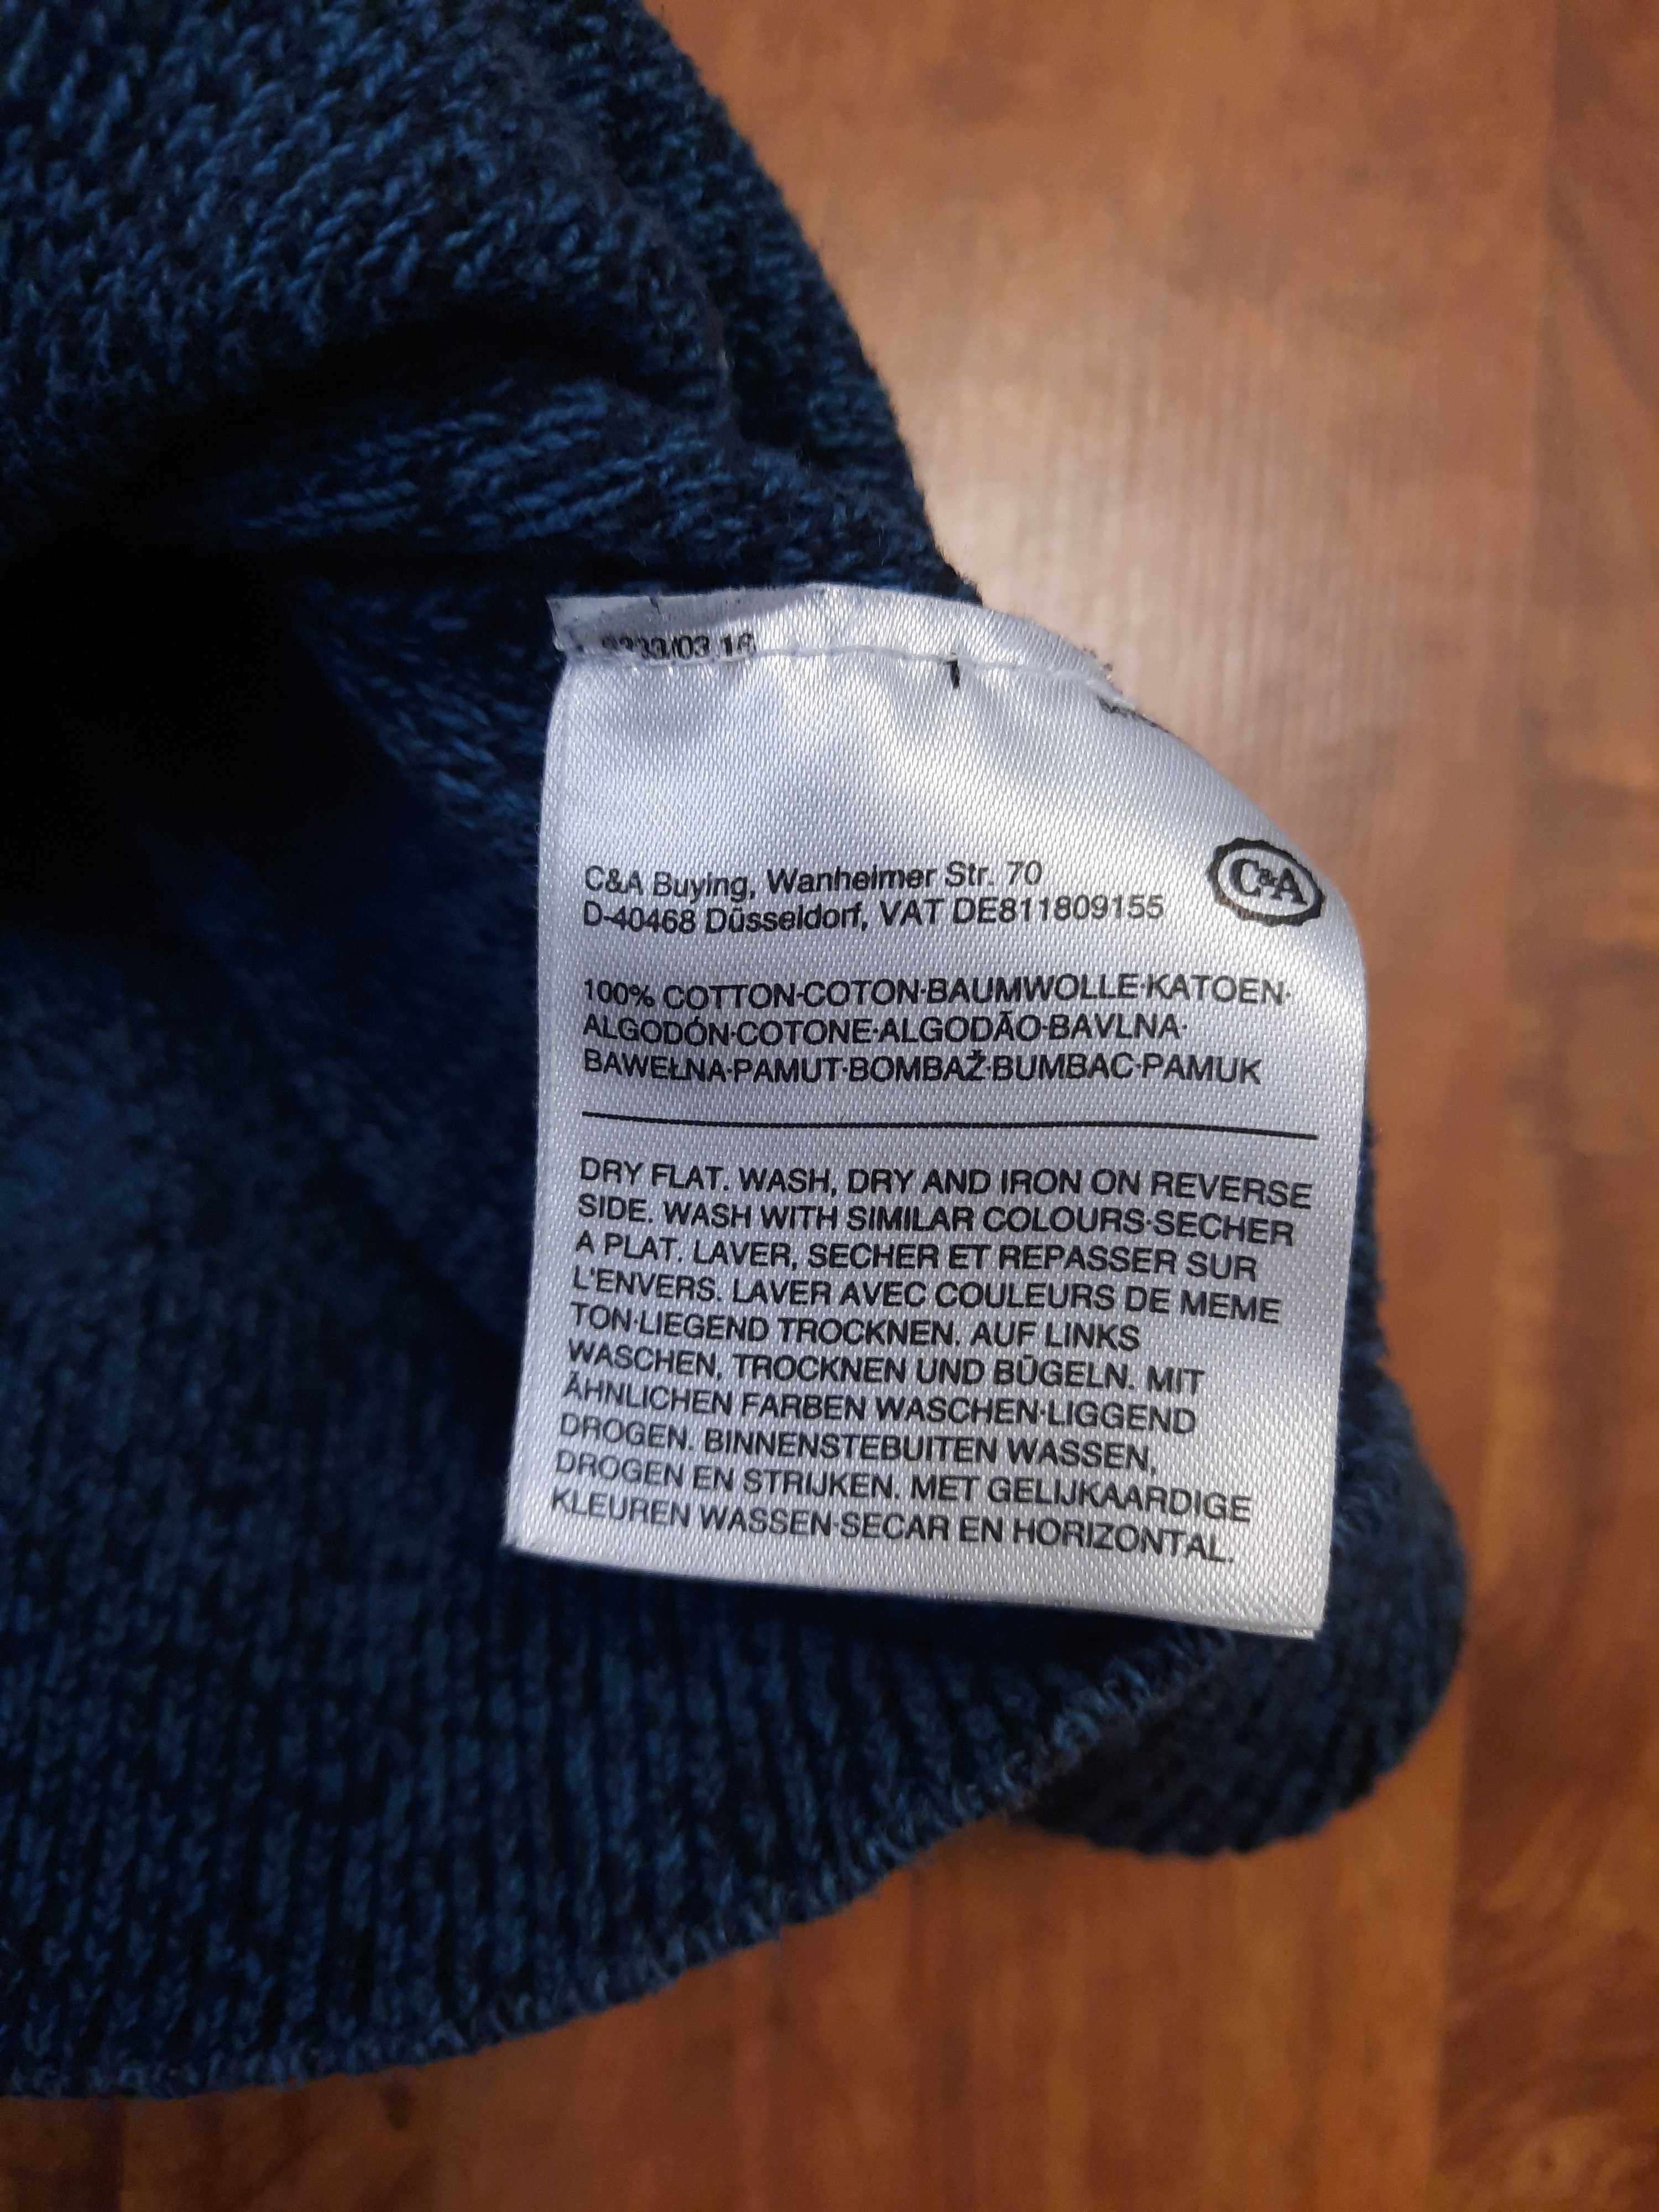 Sweter bawełniany bluza Urban District Angelo Litrico rozmiar L